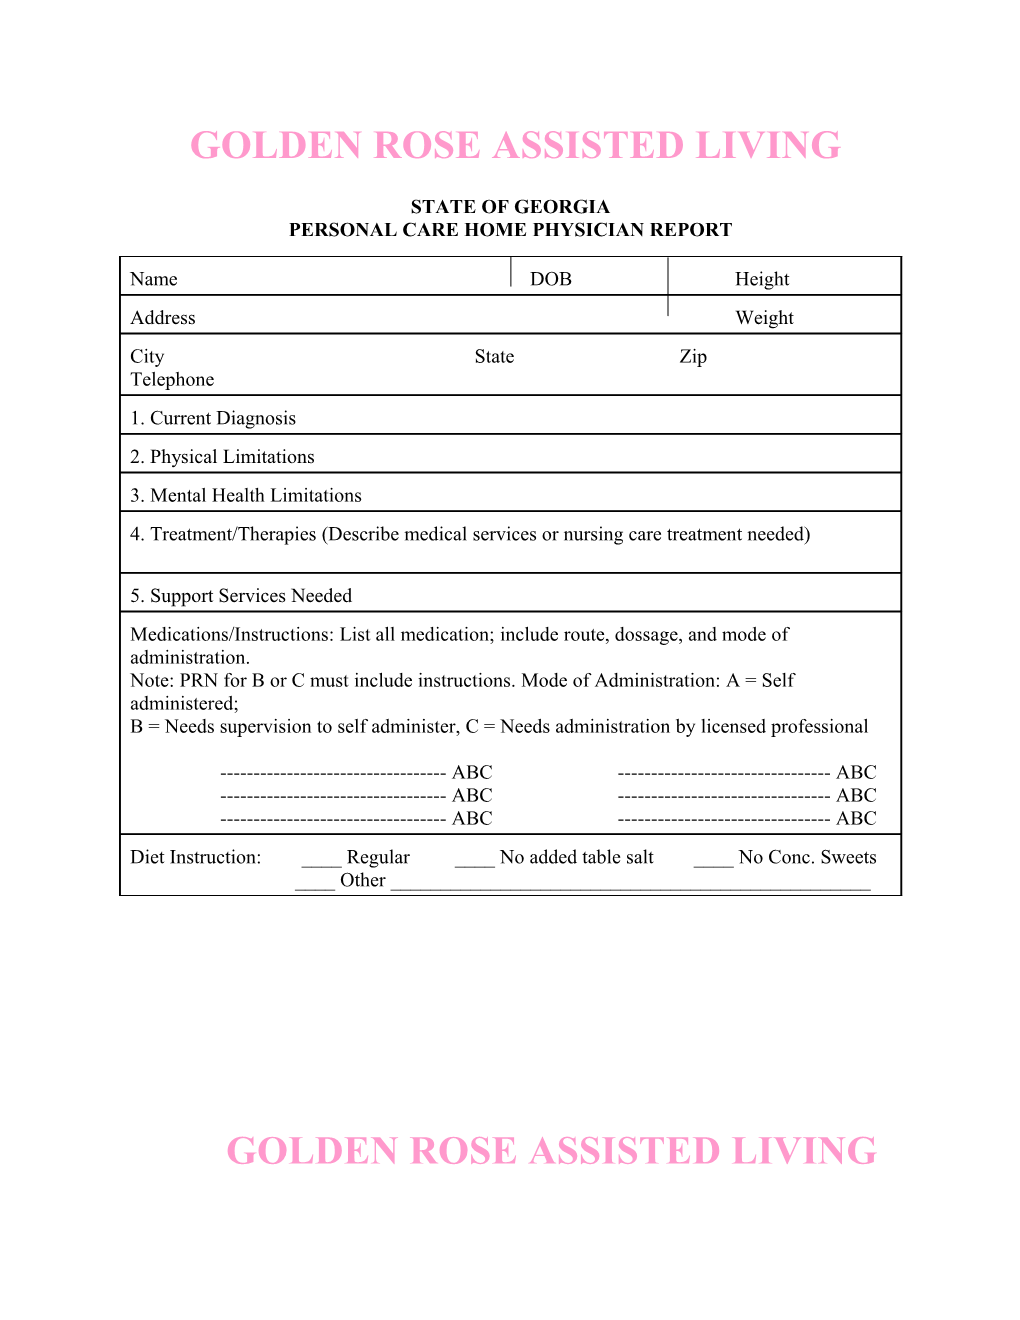 Golden Rose Assisted Living